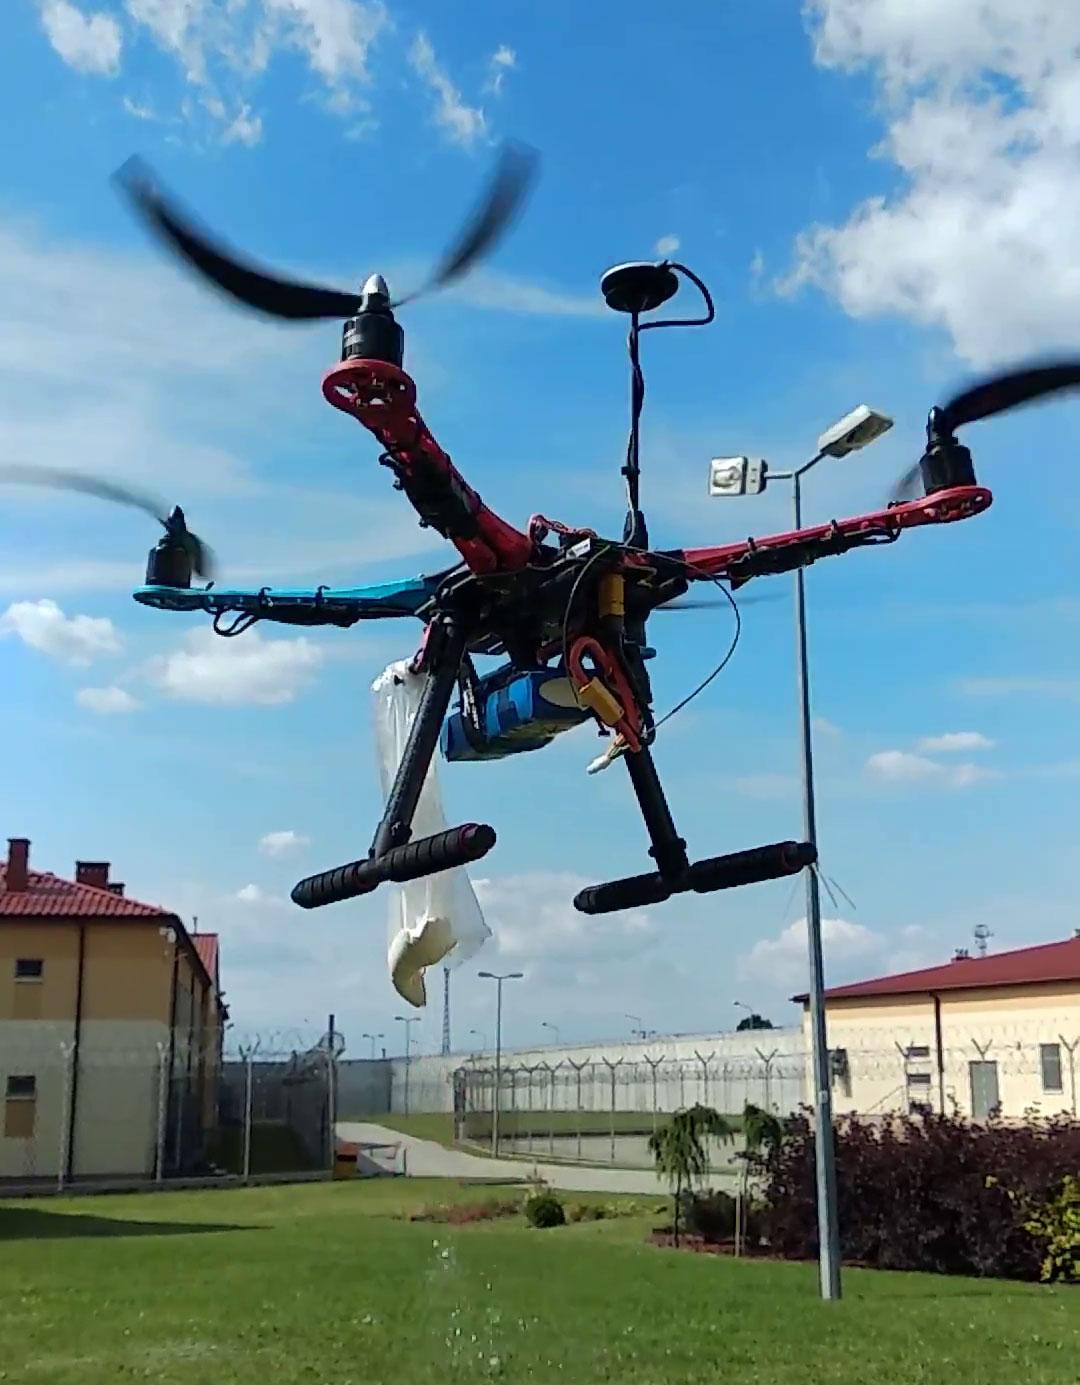 Drony mogą stanowić zagrożenie dla bezpieczeństwa w zakładach karnych i aresztach (wideo)